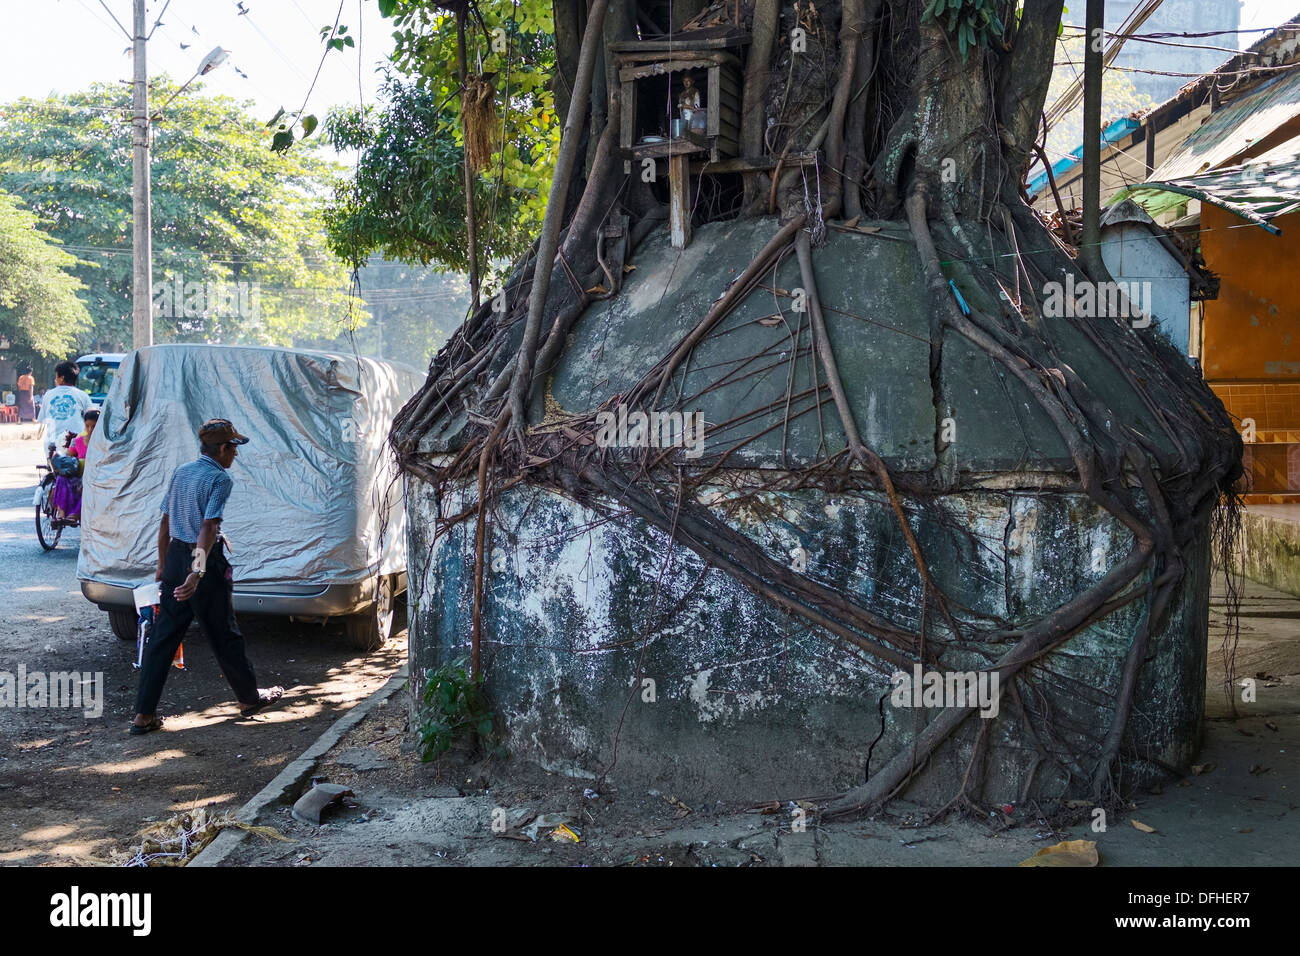 Concrete base at bayan tree, Yangon, Myanmar Stock Photo